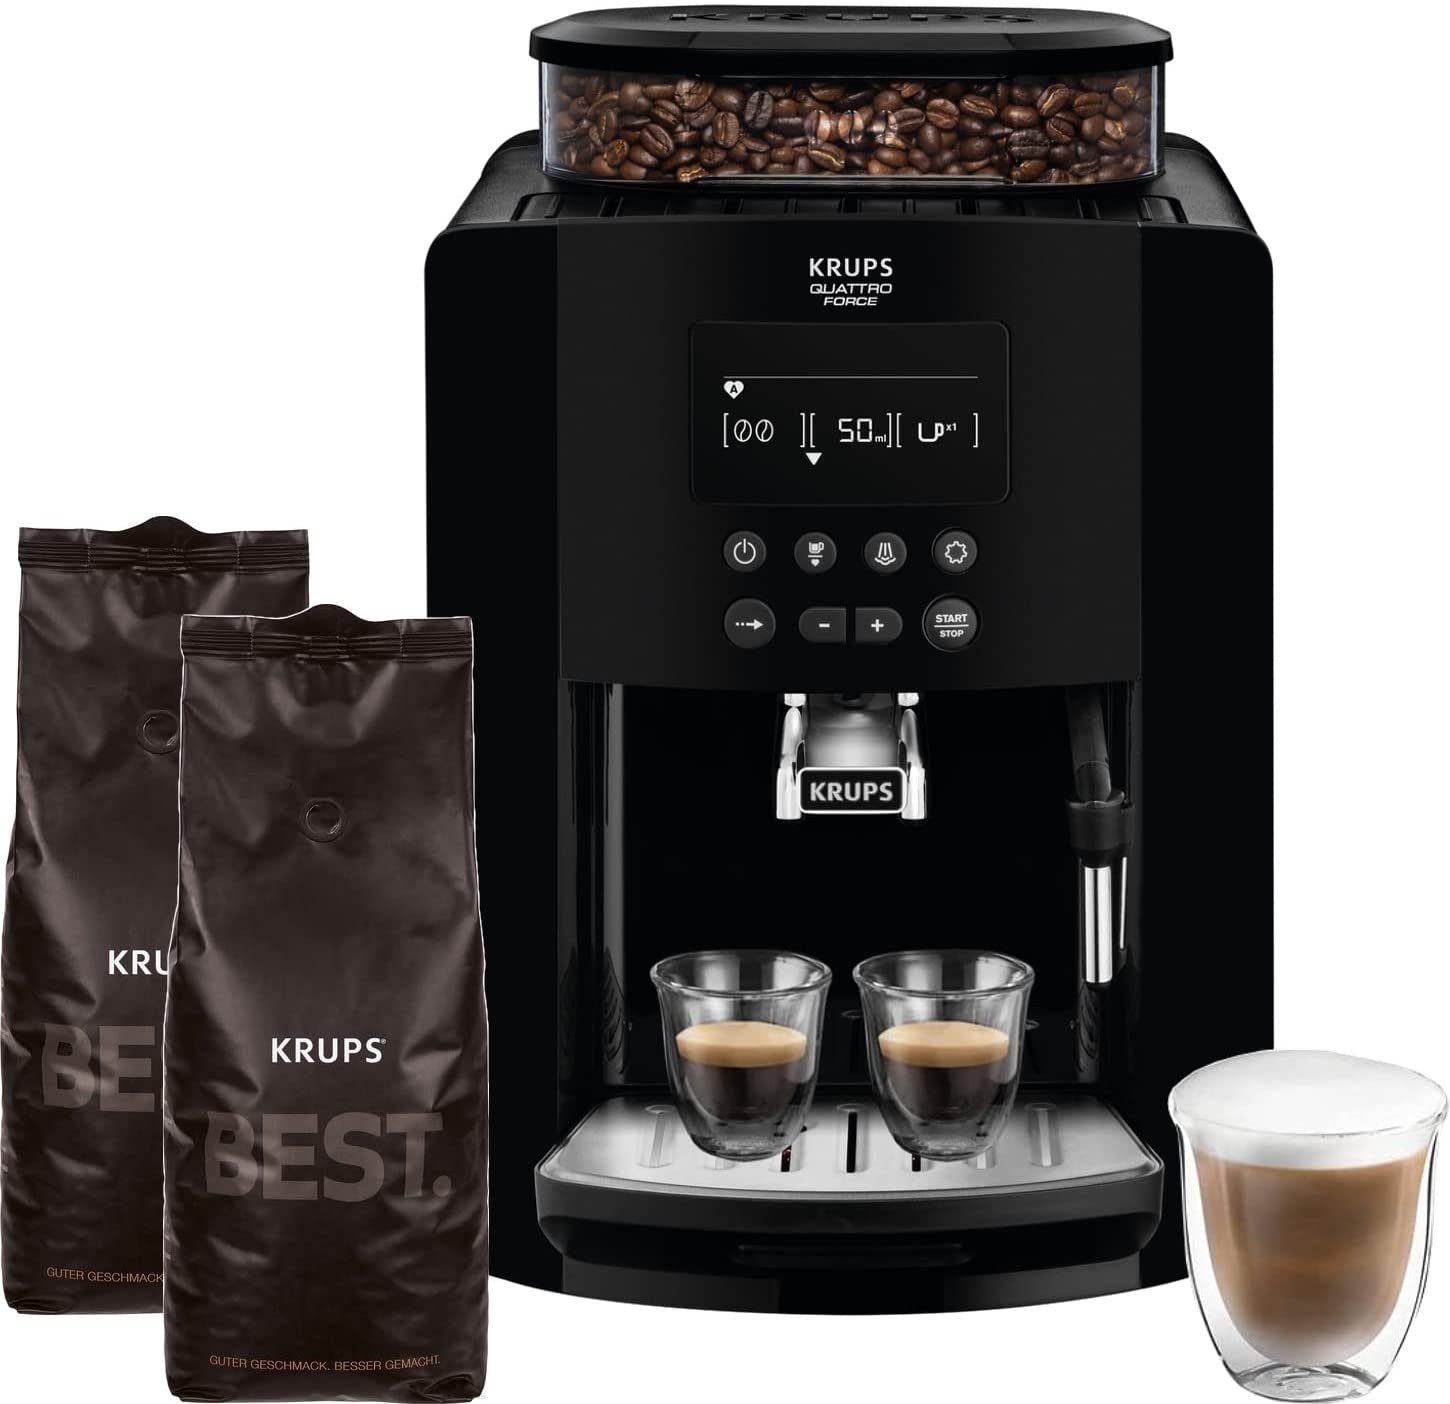 Krups Kaffeevollautomat Arabica, + 2Kg Kaffeebohnen Best Crema ZES800,  Direktwahltasten für Espresso und Kaffee, großes Display, 1,7L,  2-Tassen-Funktion, Milchaufschäumdüse 1450W, 15 Bar, EINFACHE BEDIENUNG 3  Temperatur + 3 Mahlgrad Einstellungen